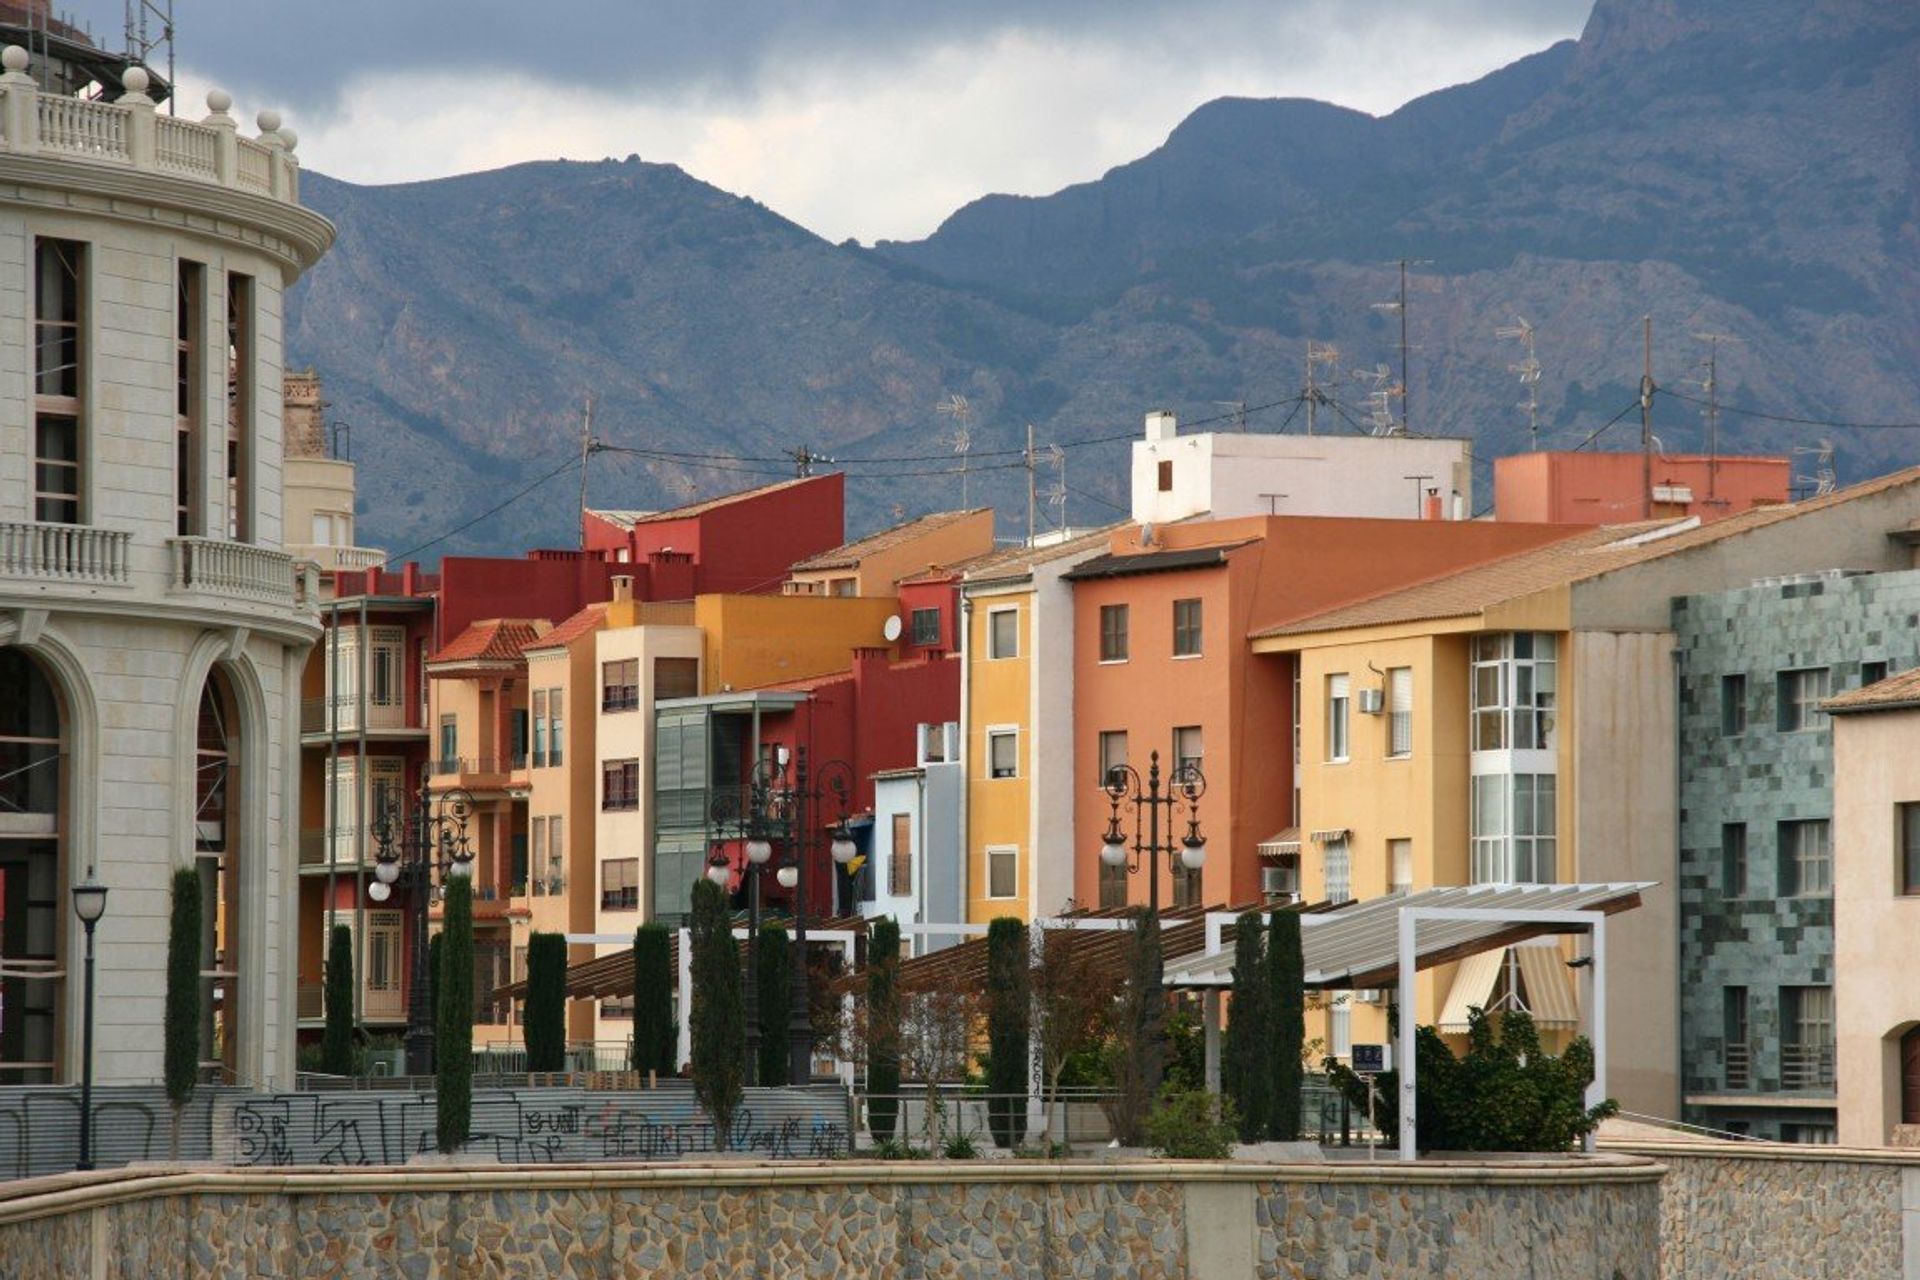 Orihuela city lies at the foot of the Si­erra de Ori­huela moun­tains, with the Segura River running through the centre